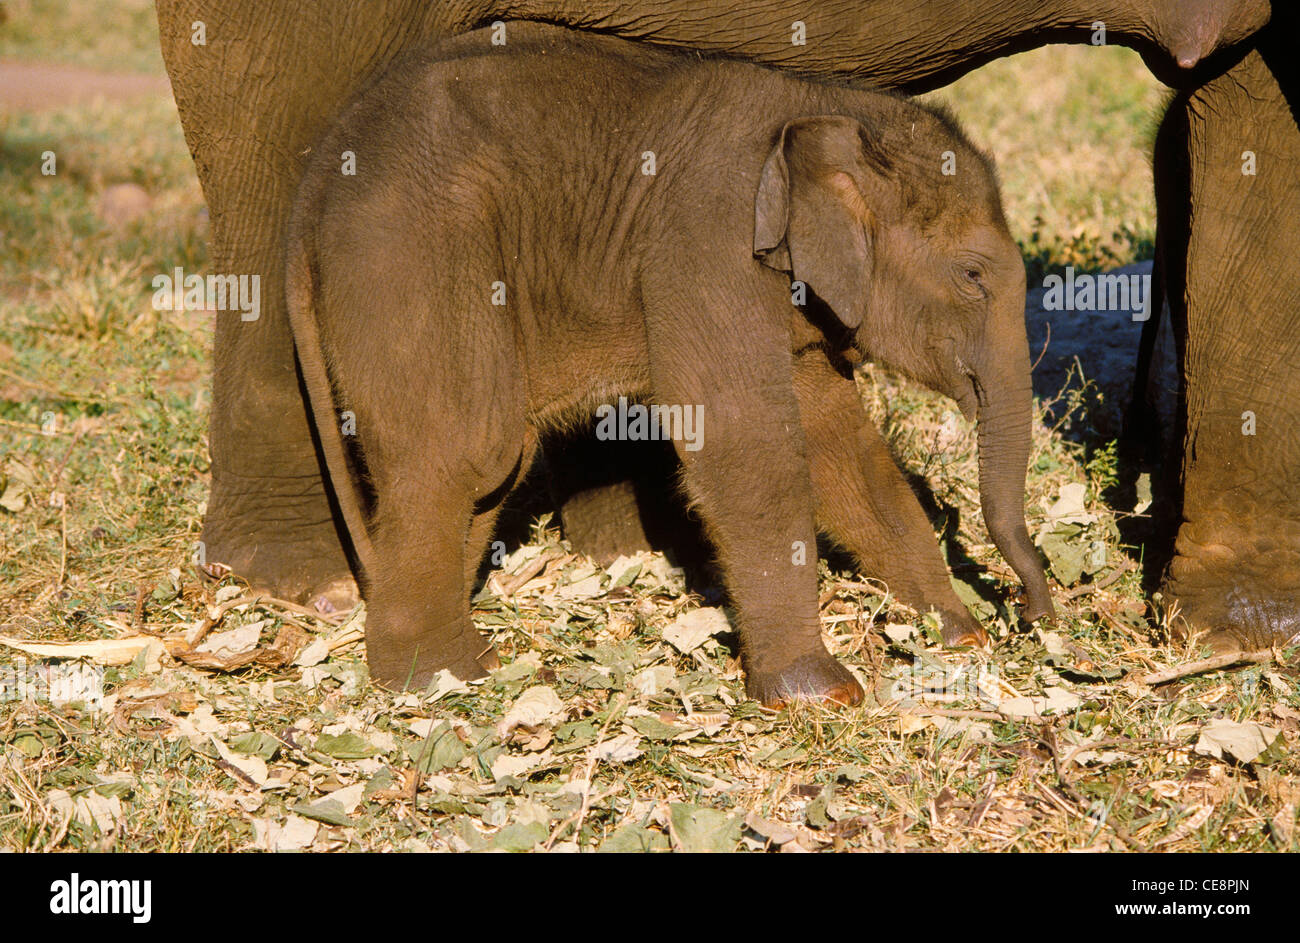 Indian baby Elephant india asia Stock Photo